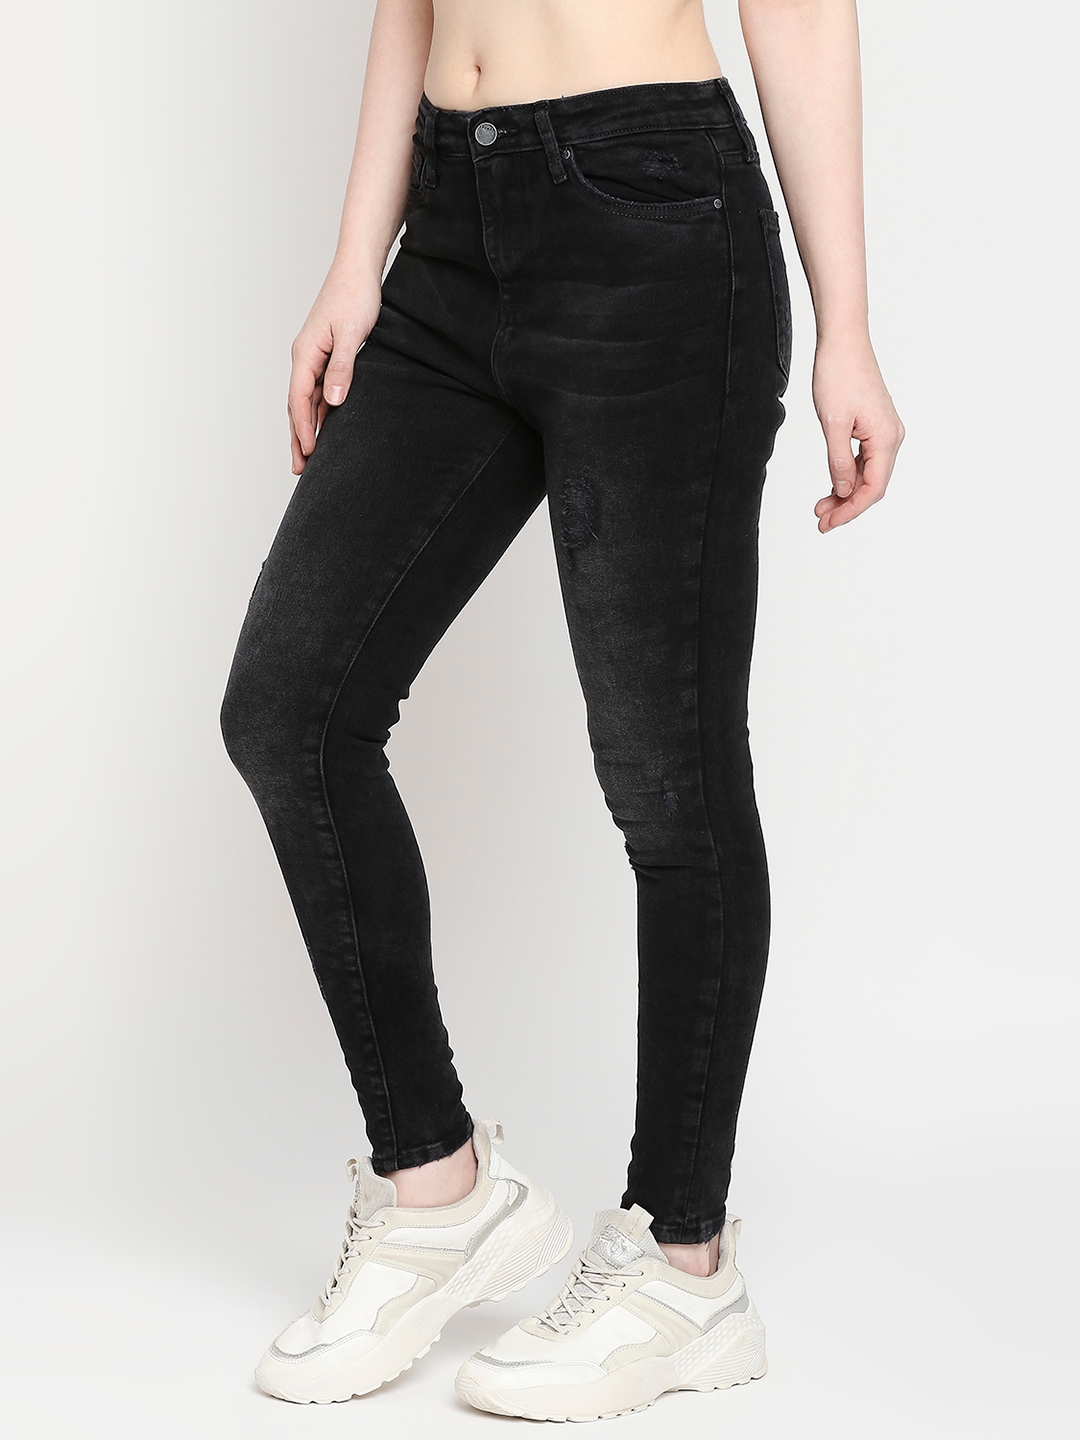 spykar | Women's Black Lycra Solid Jeans 1